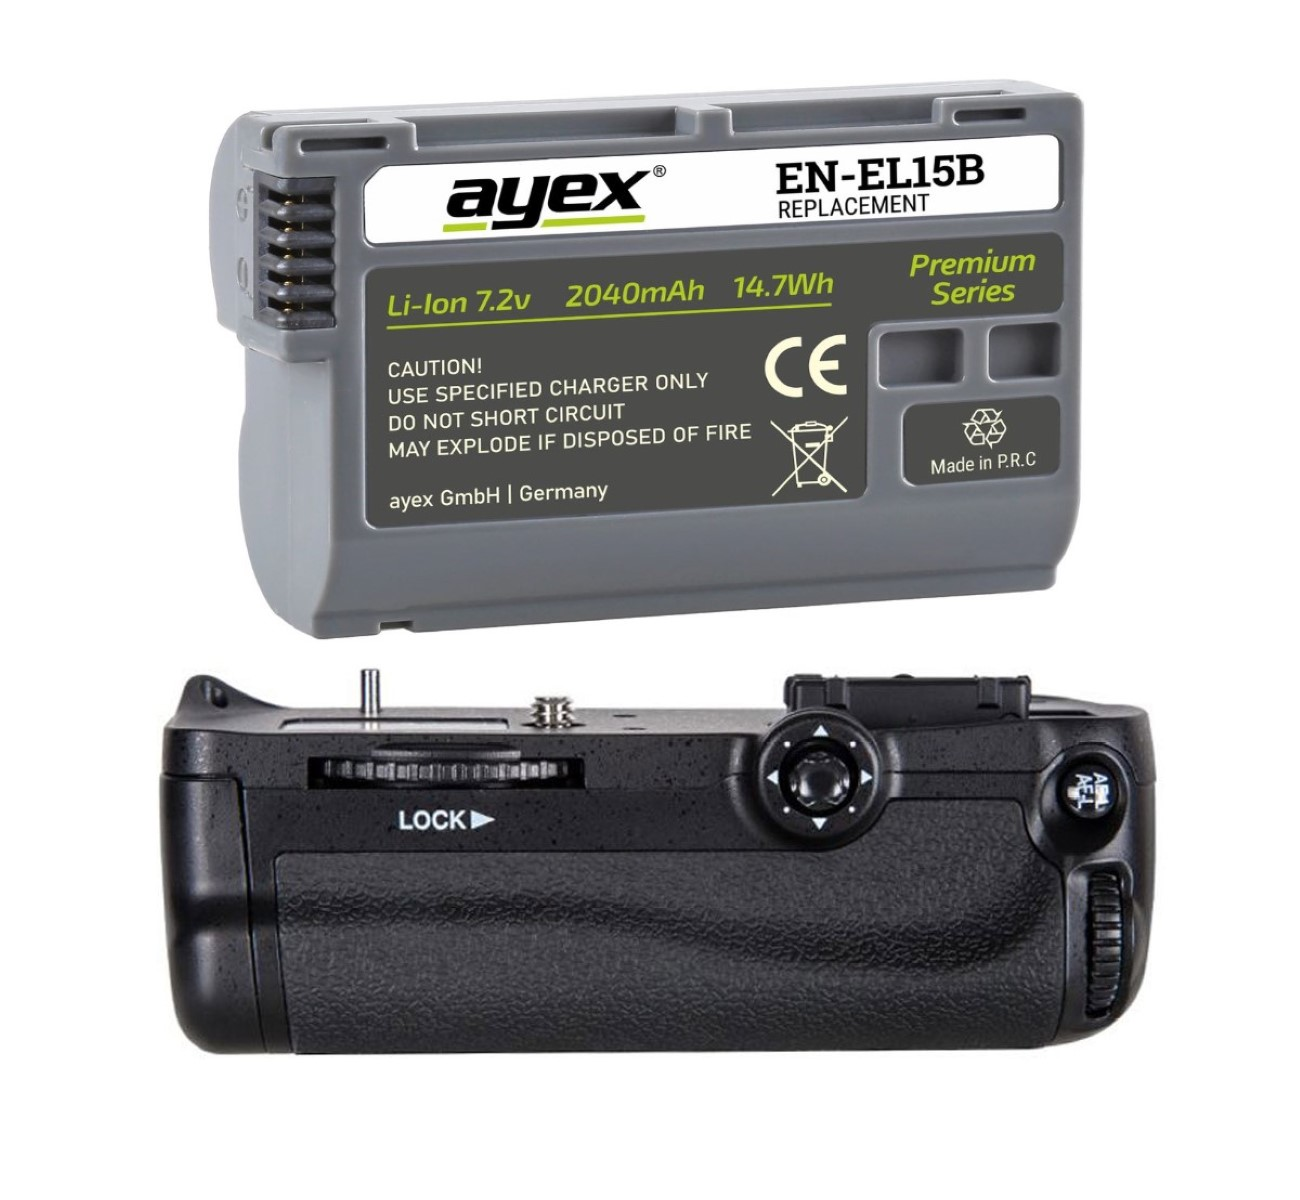 EN-EL15B Set, ersetzt D7100 D7200 Batteriegriff + Set Schwarz AYEX Nikon MB-D15 Akku, Batteriegriff 1x für